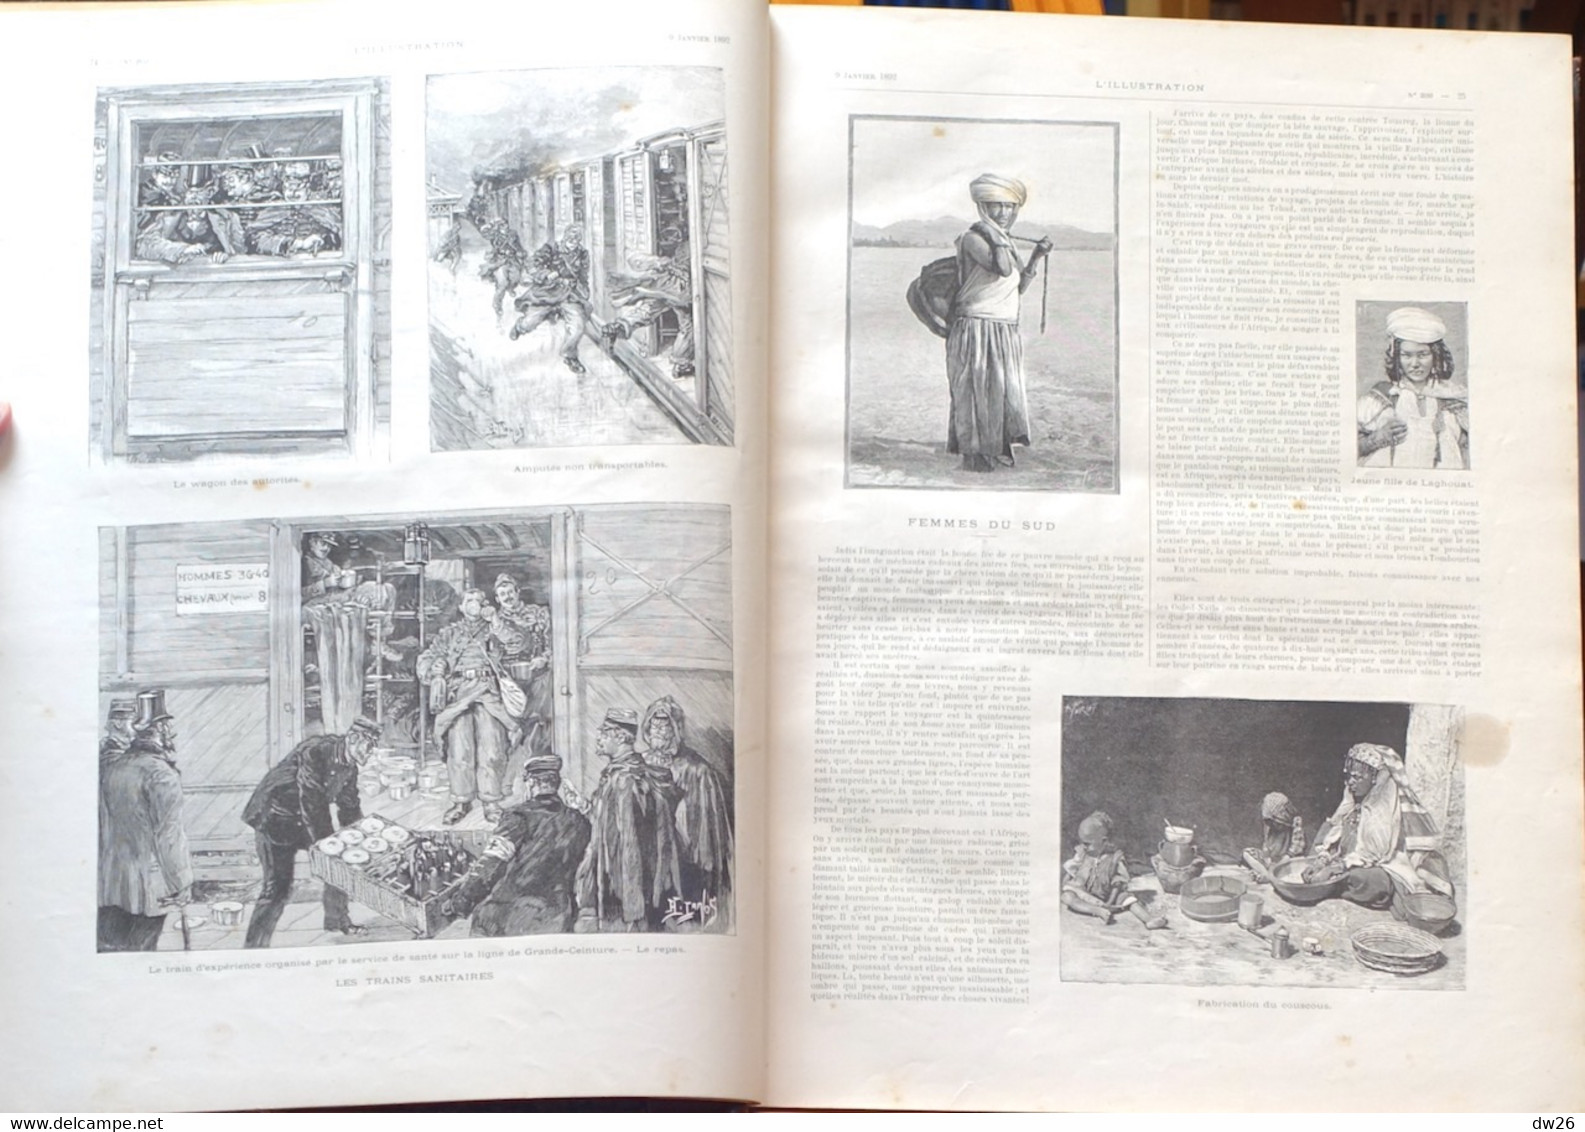 Livre Relié - Recueil De Revues: 1 L'Illustration 1892 (Tome XCIX) De Janvier à Juin - Magazines - Before 1900